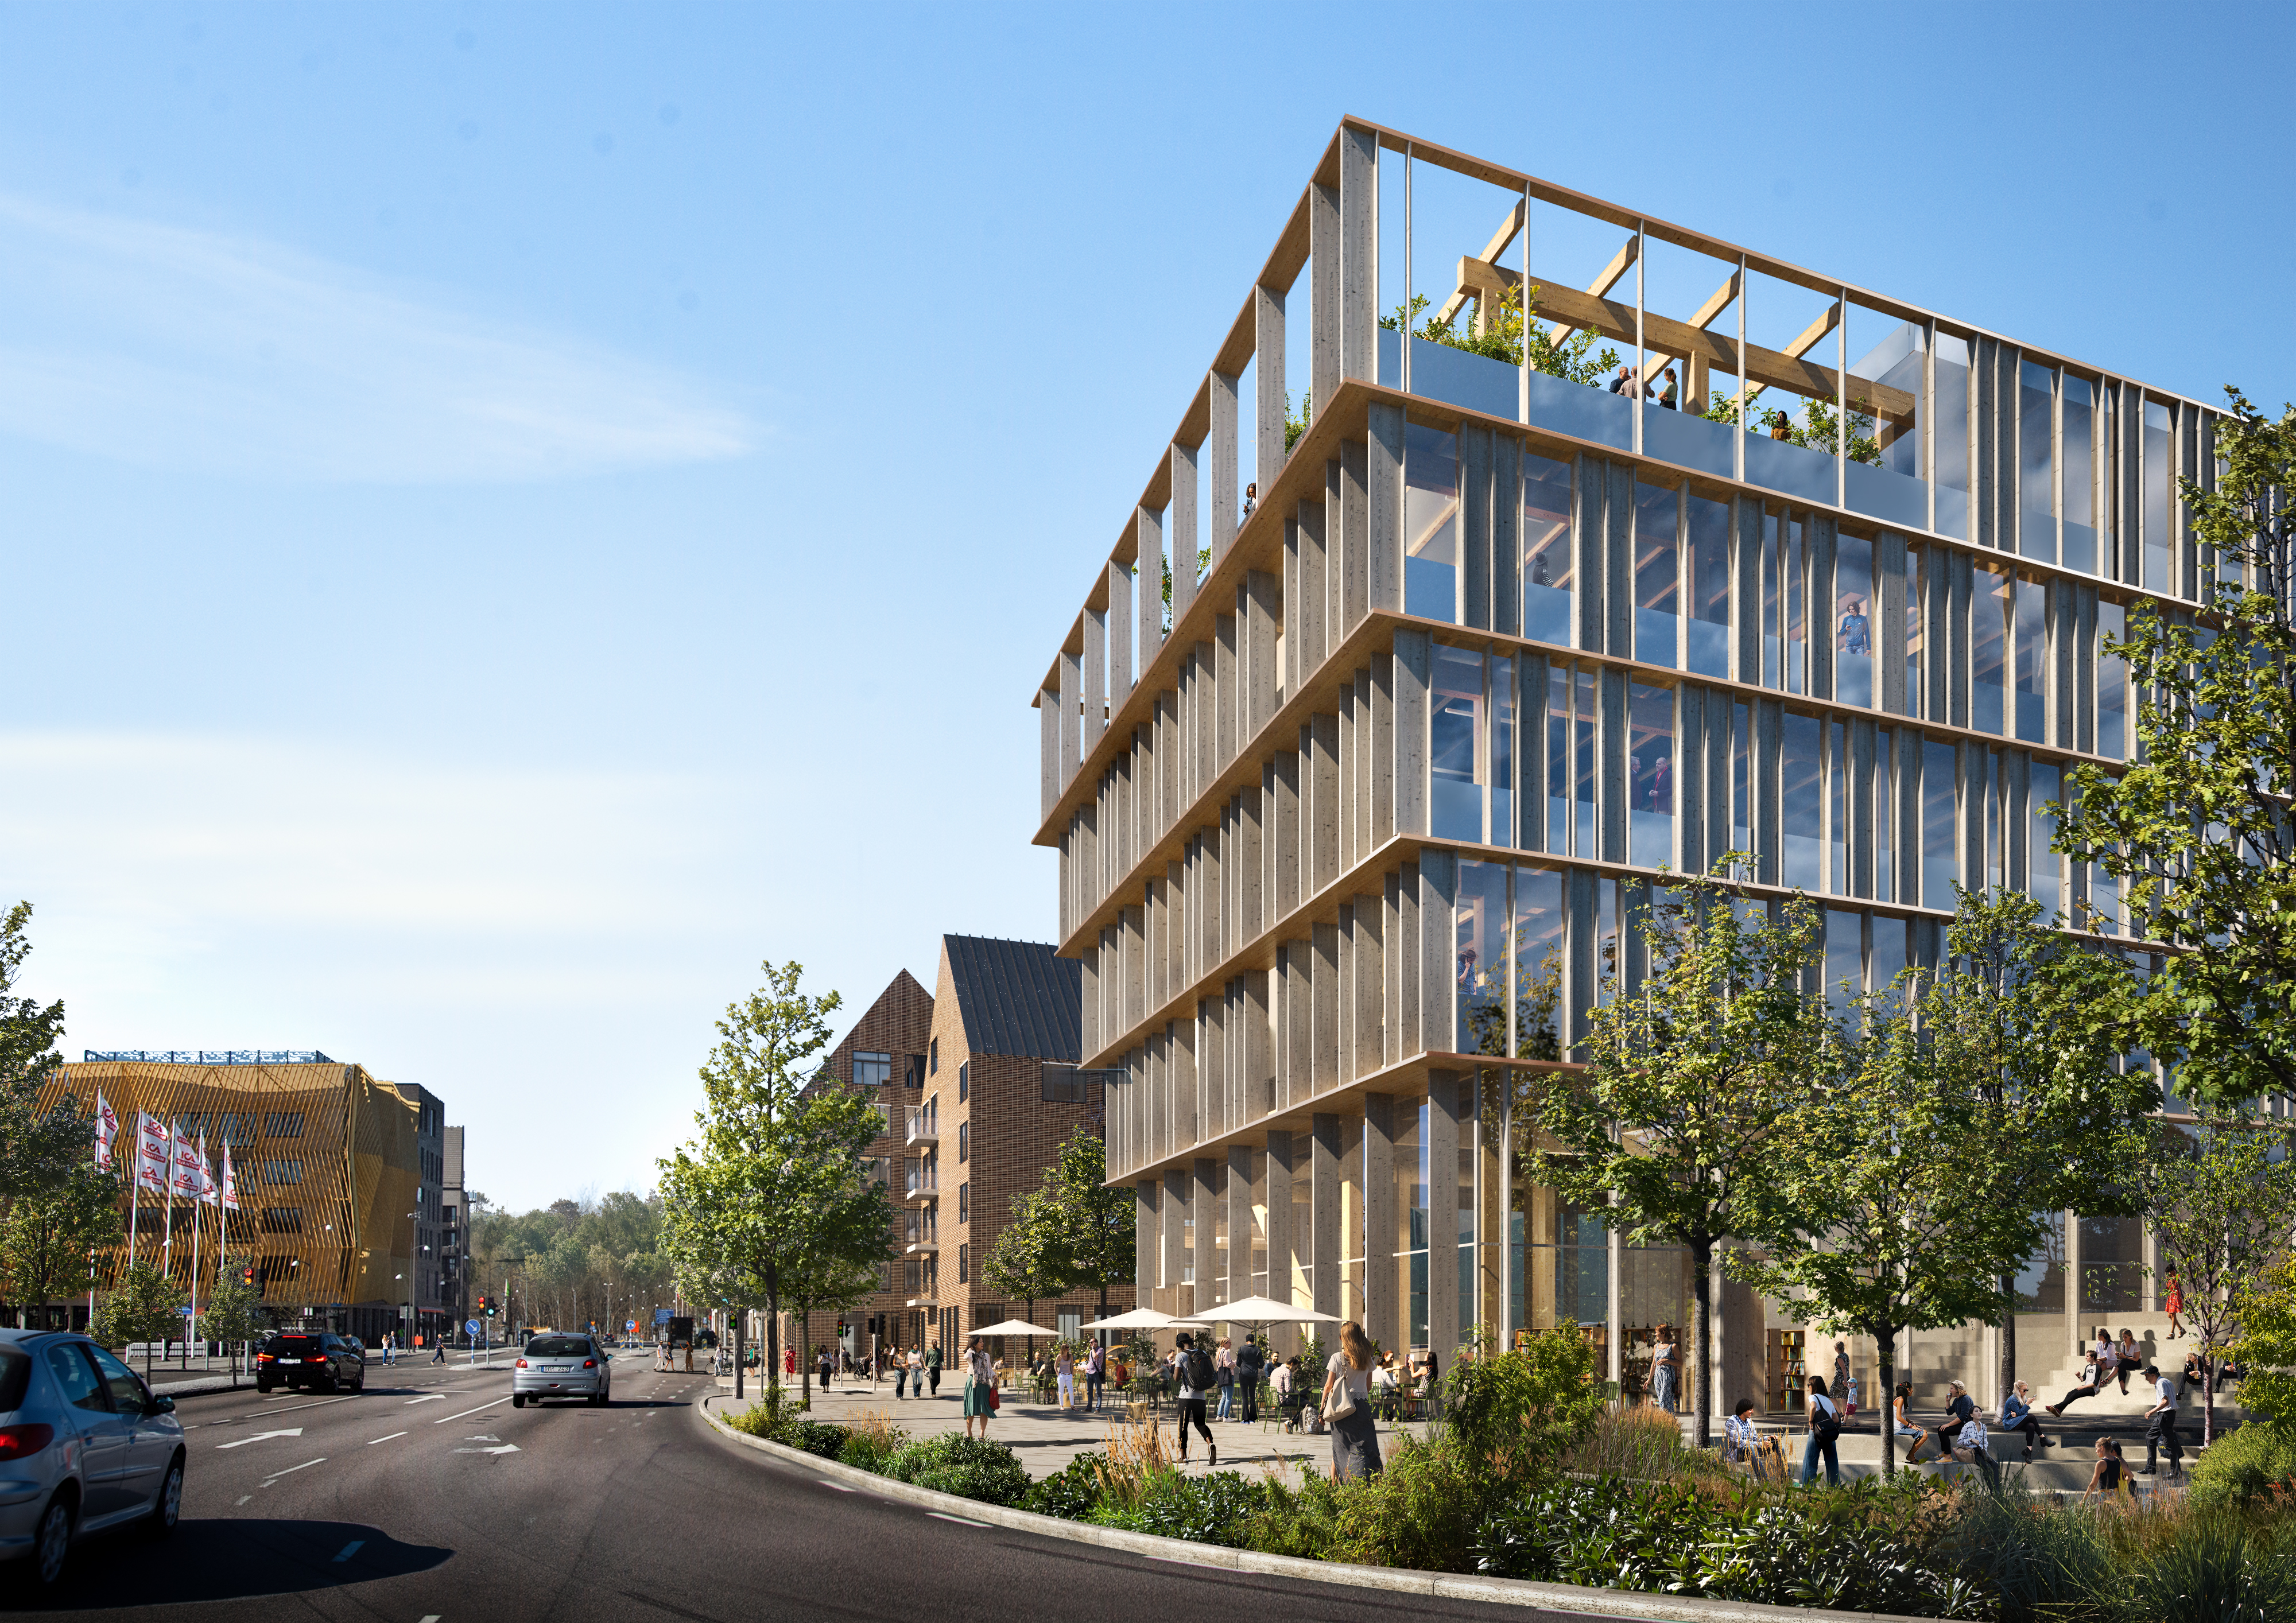 Stadsutvecklingsprojektet Nya Hovås omfattar såväl kommersiella lokaler och bostäder som skola och mötesplatser. Bild: White